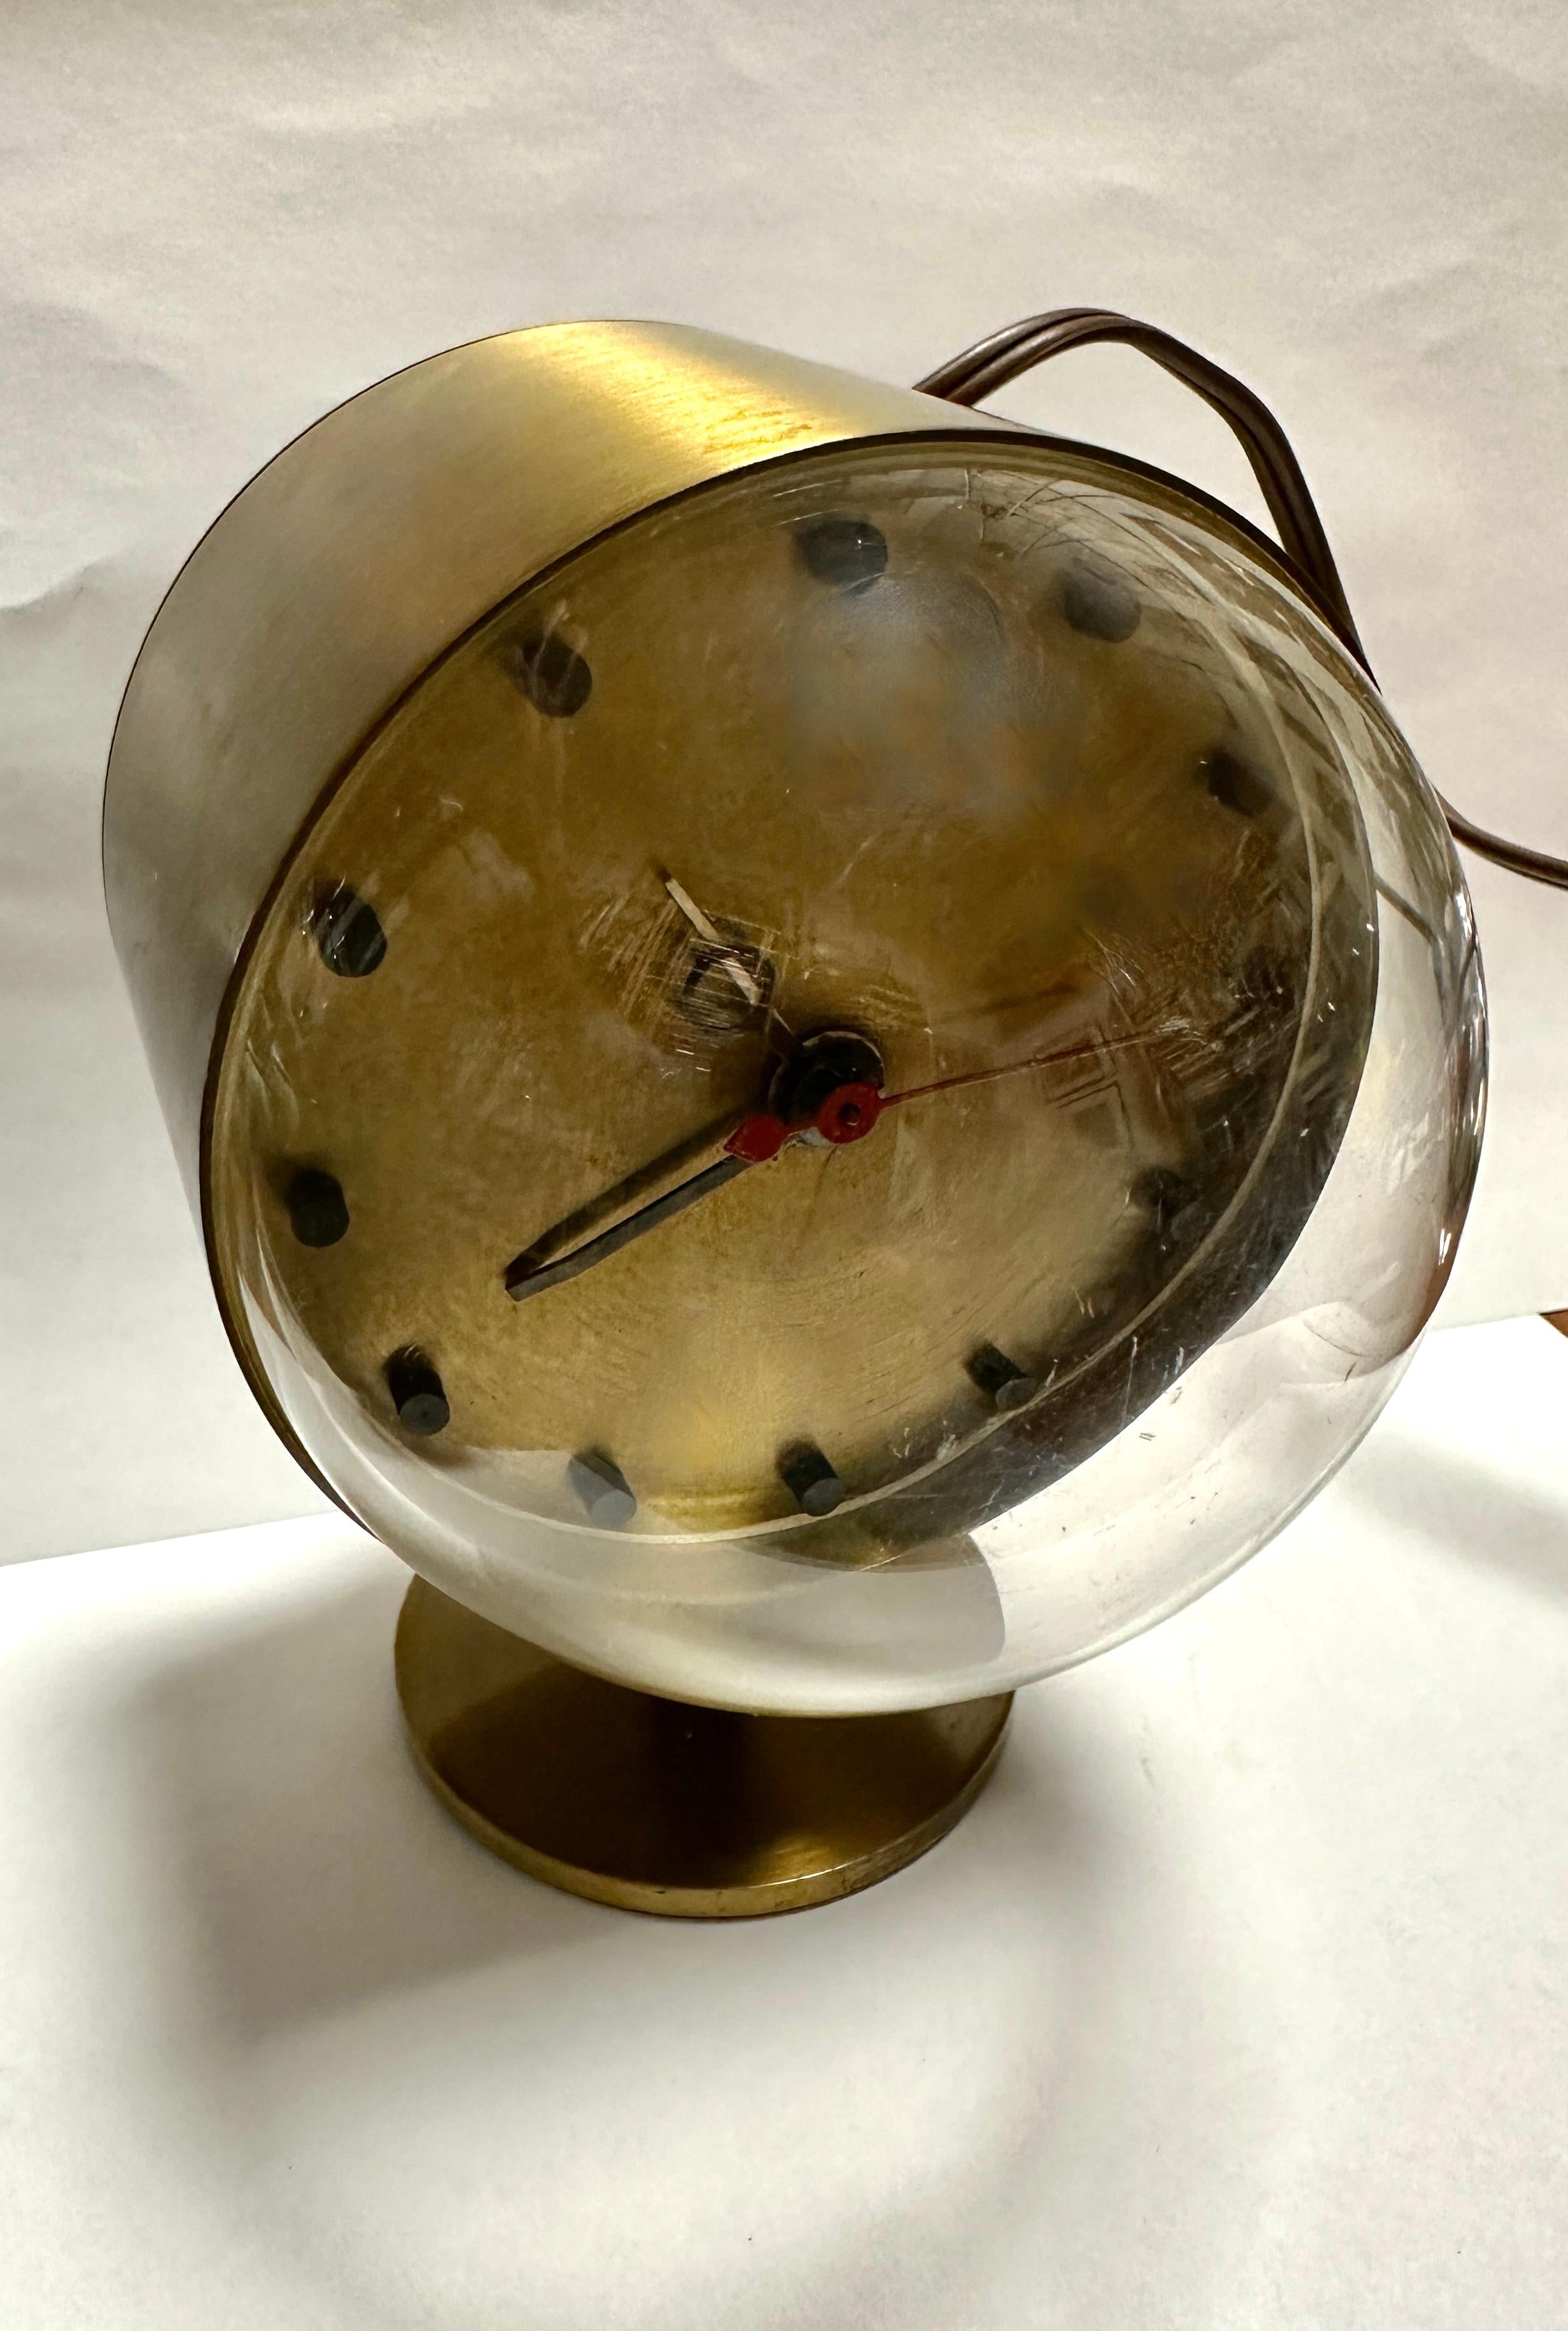 Une belle horloge vintage mid century modern George Nelson for Howard Miller 4766 en état de marche. L'horloge dispose d'une fonction d'alarme qui fonctionne également. L'horloge porte une étiquette Treadway Toomey Auction provenant d'une vente aux